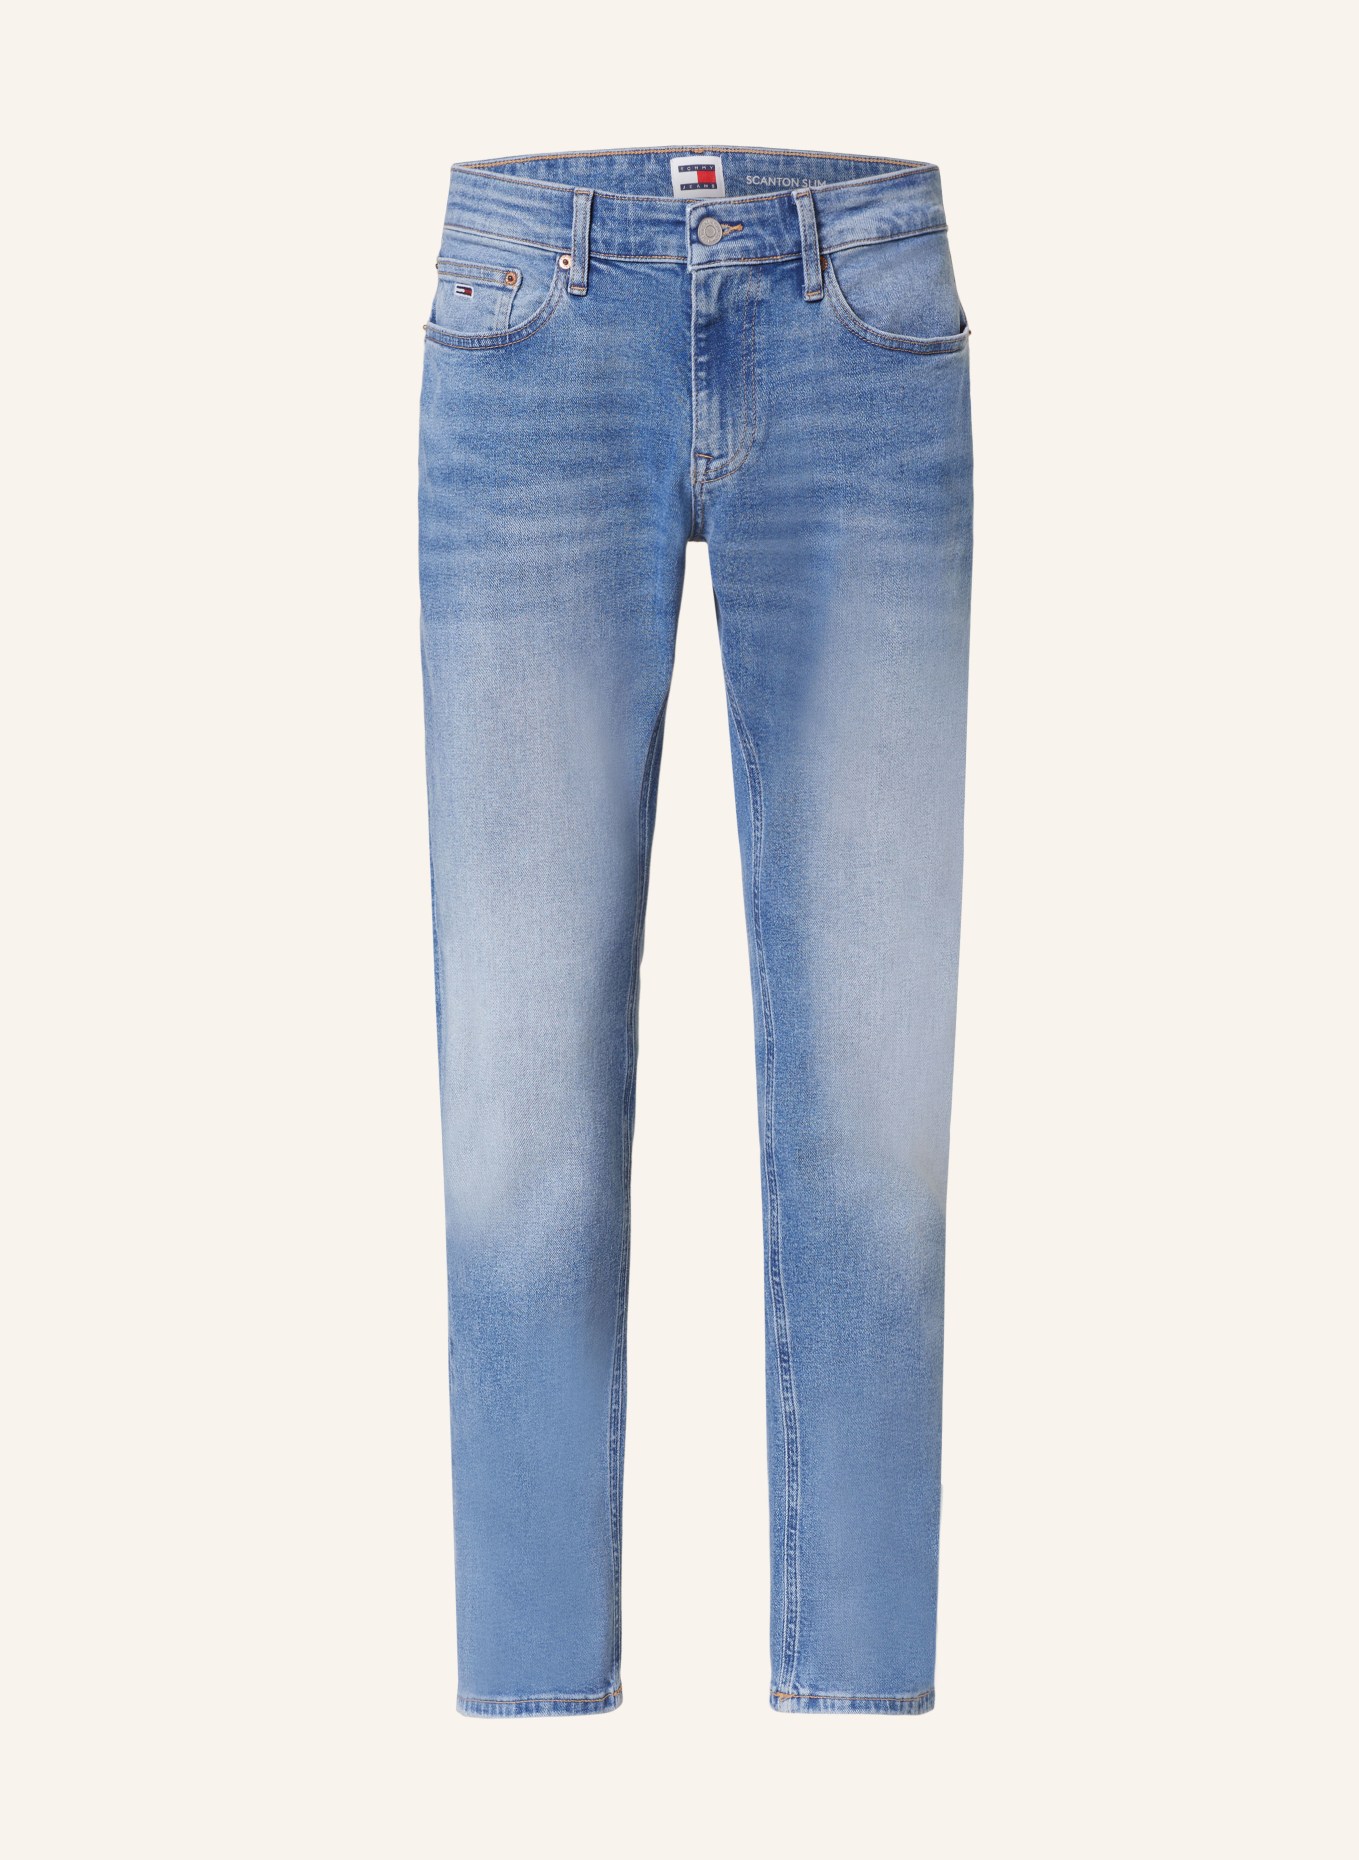 TOMMY JEANS Jeans SCANTON Slim Fit, Color: 1AB Denim Light (Image 1)